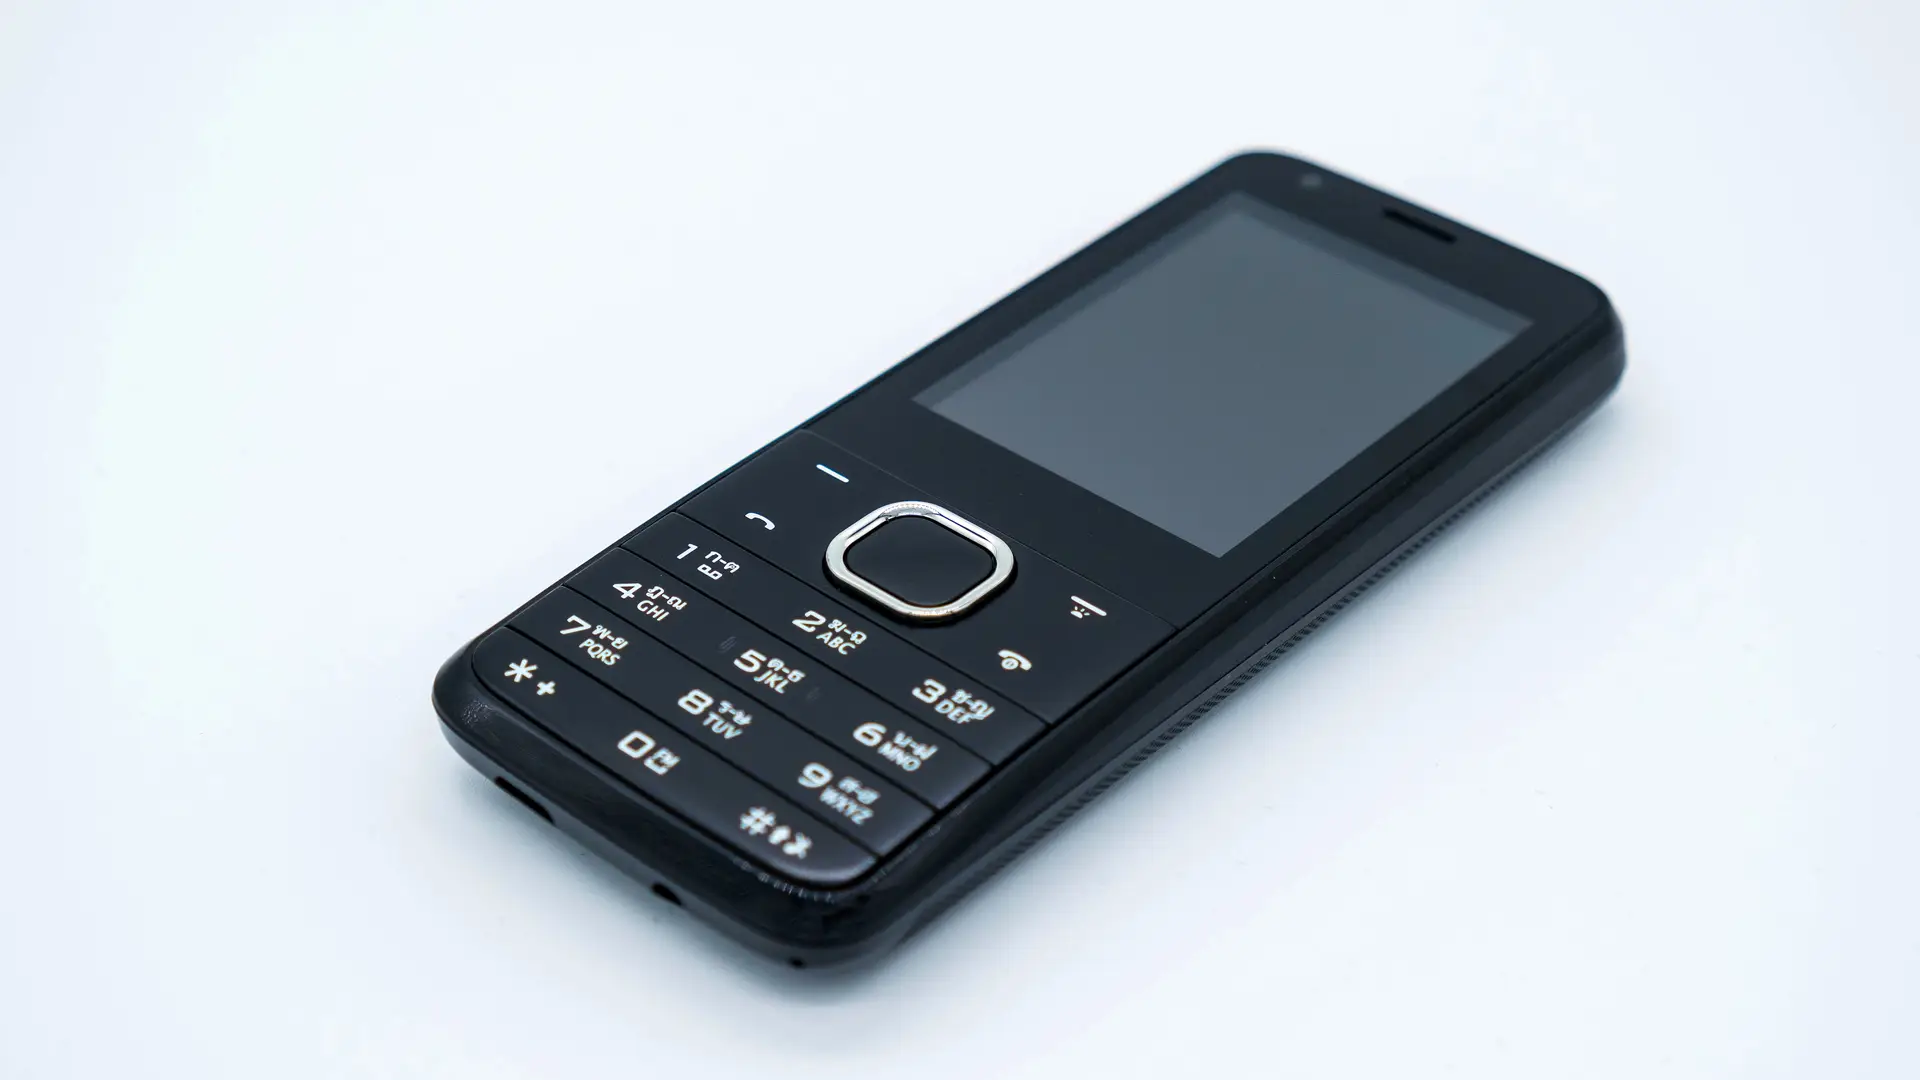 Celular Barato Simples Nokia 110 Ligações Jogos Fotos + Fone